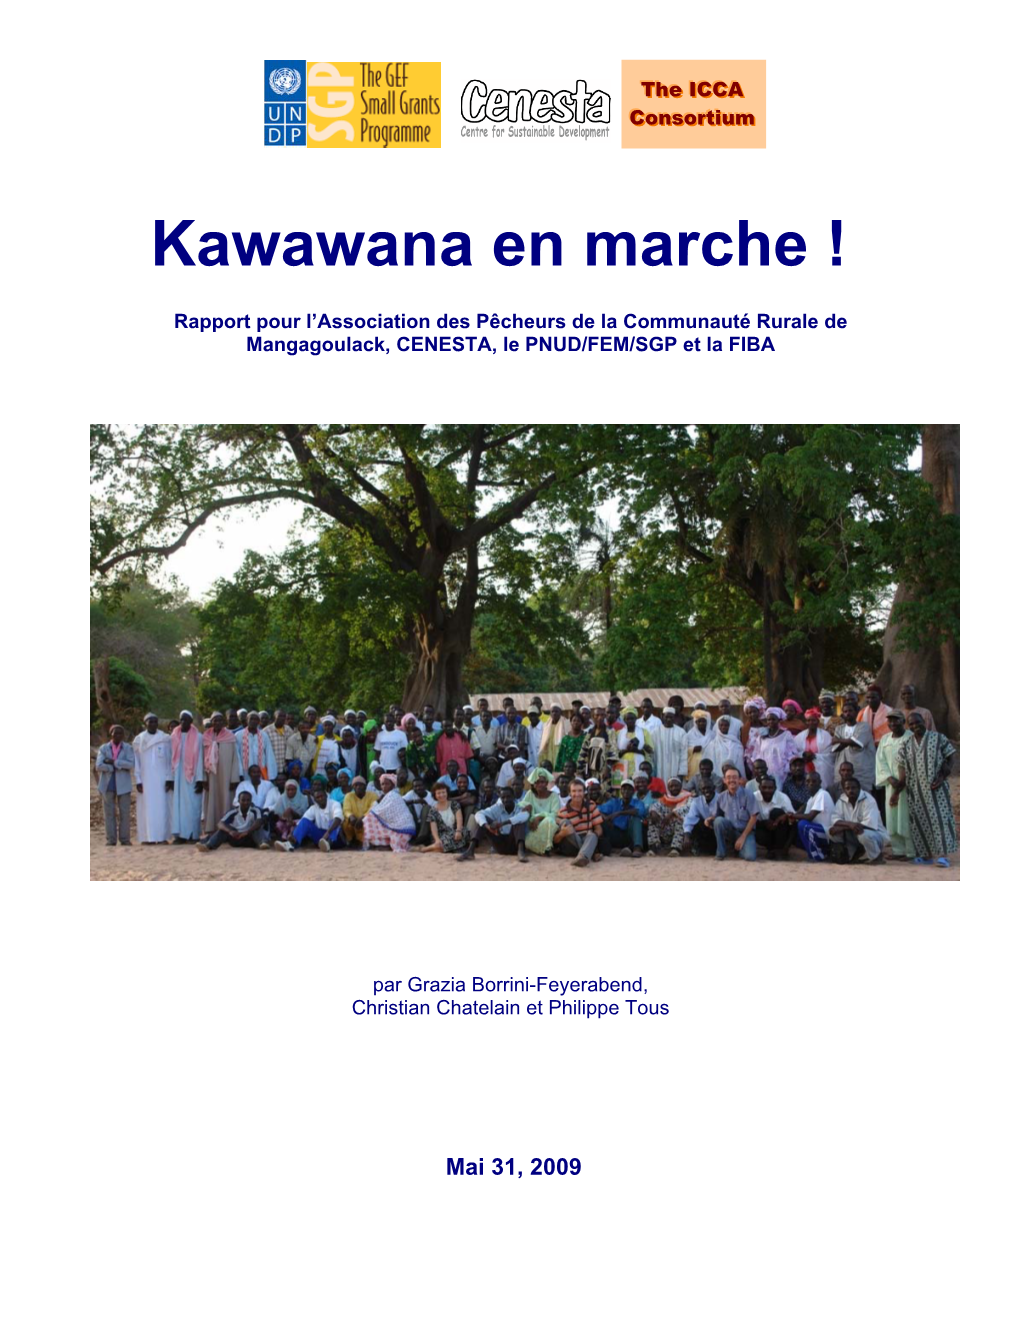 Kawawana En Marche !